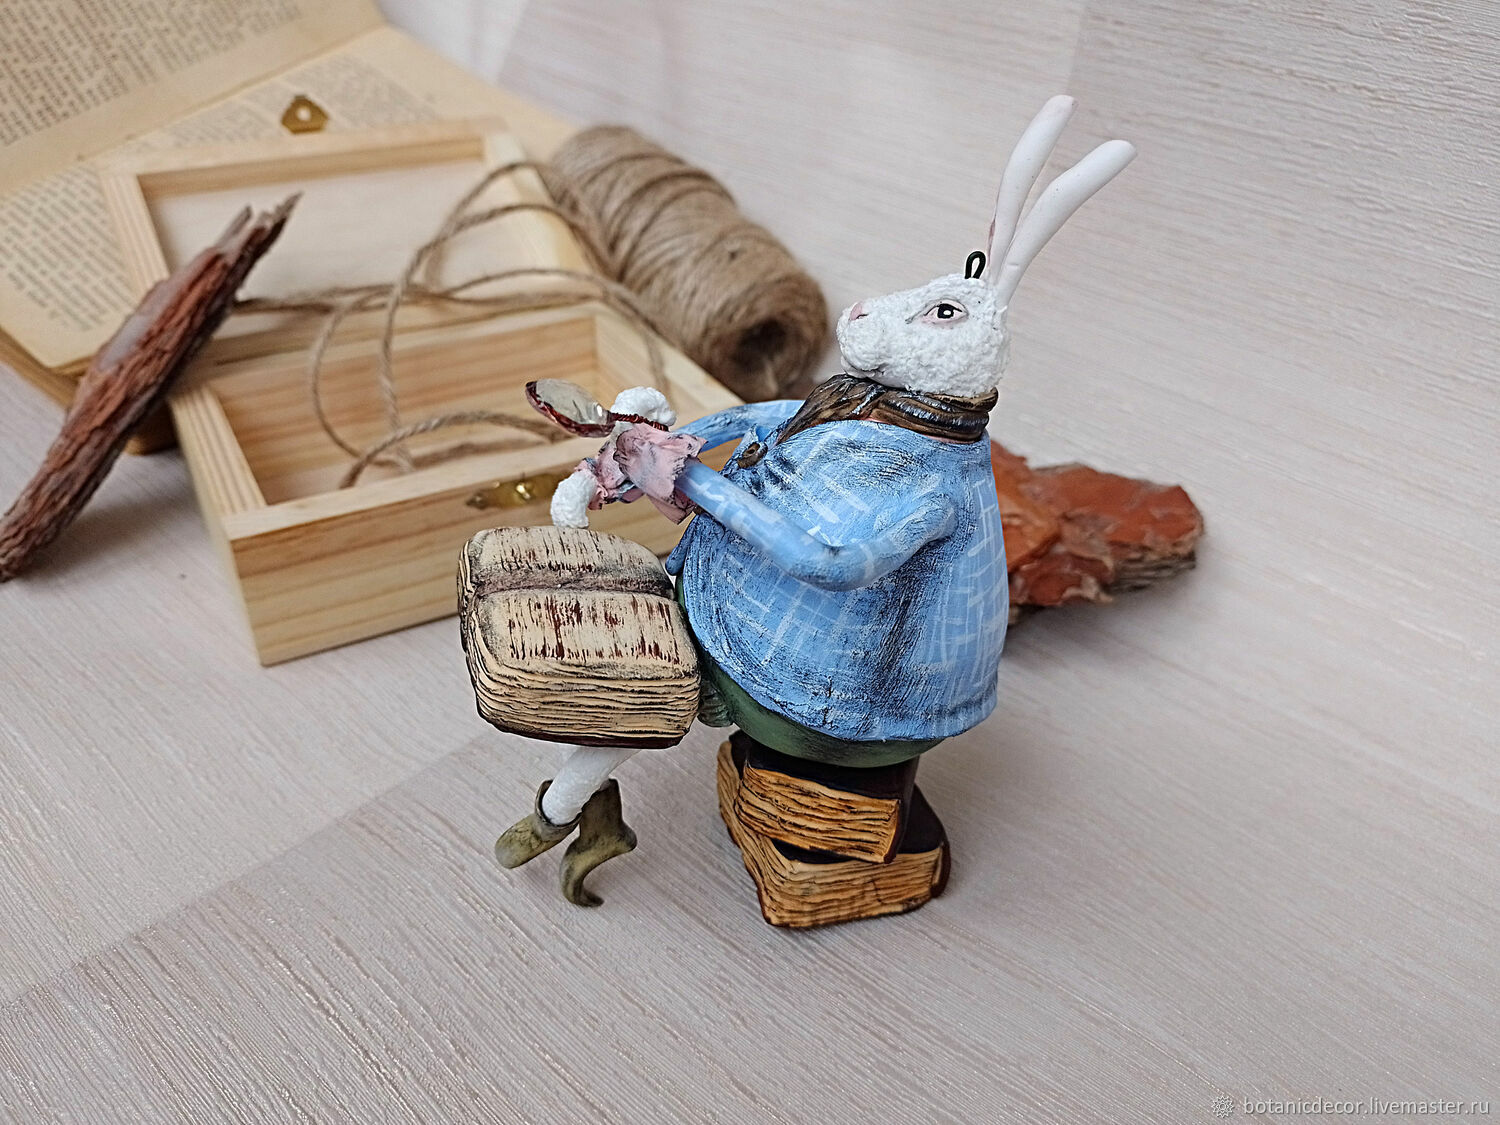 Елочная игрушка заяц кролик на книгах, Елочные игрушки, Воронеж,  Фото №1